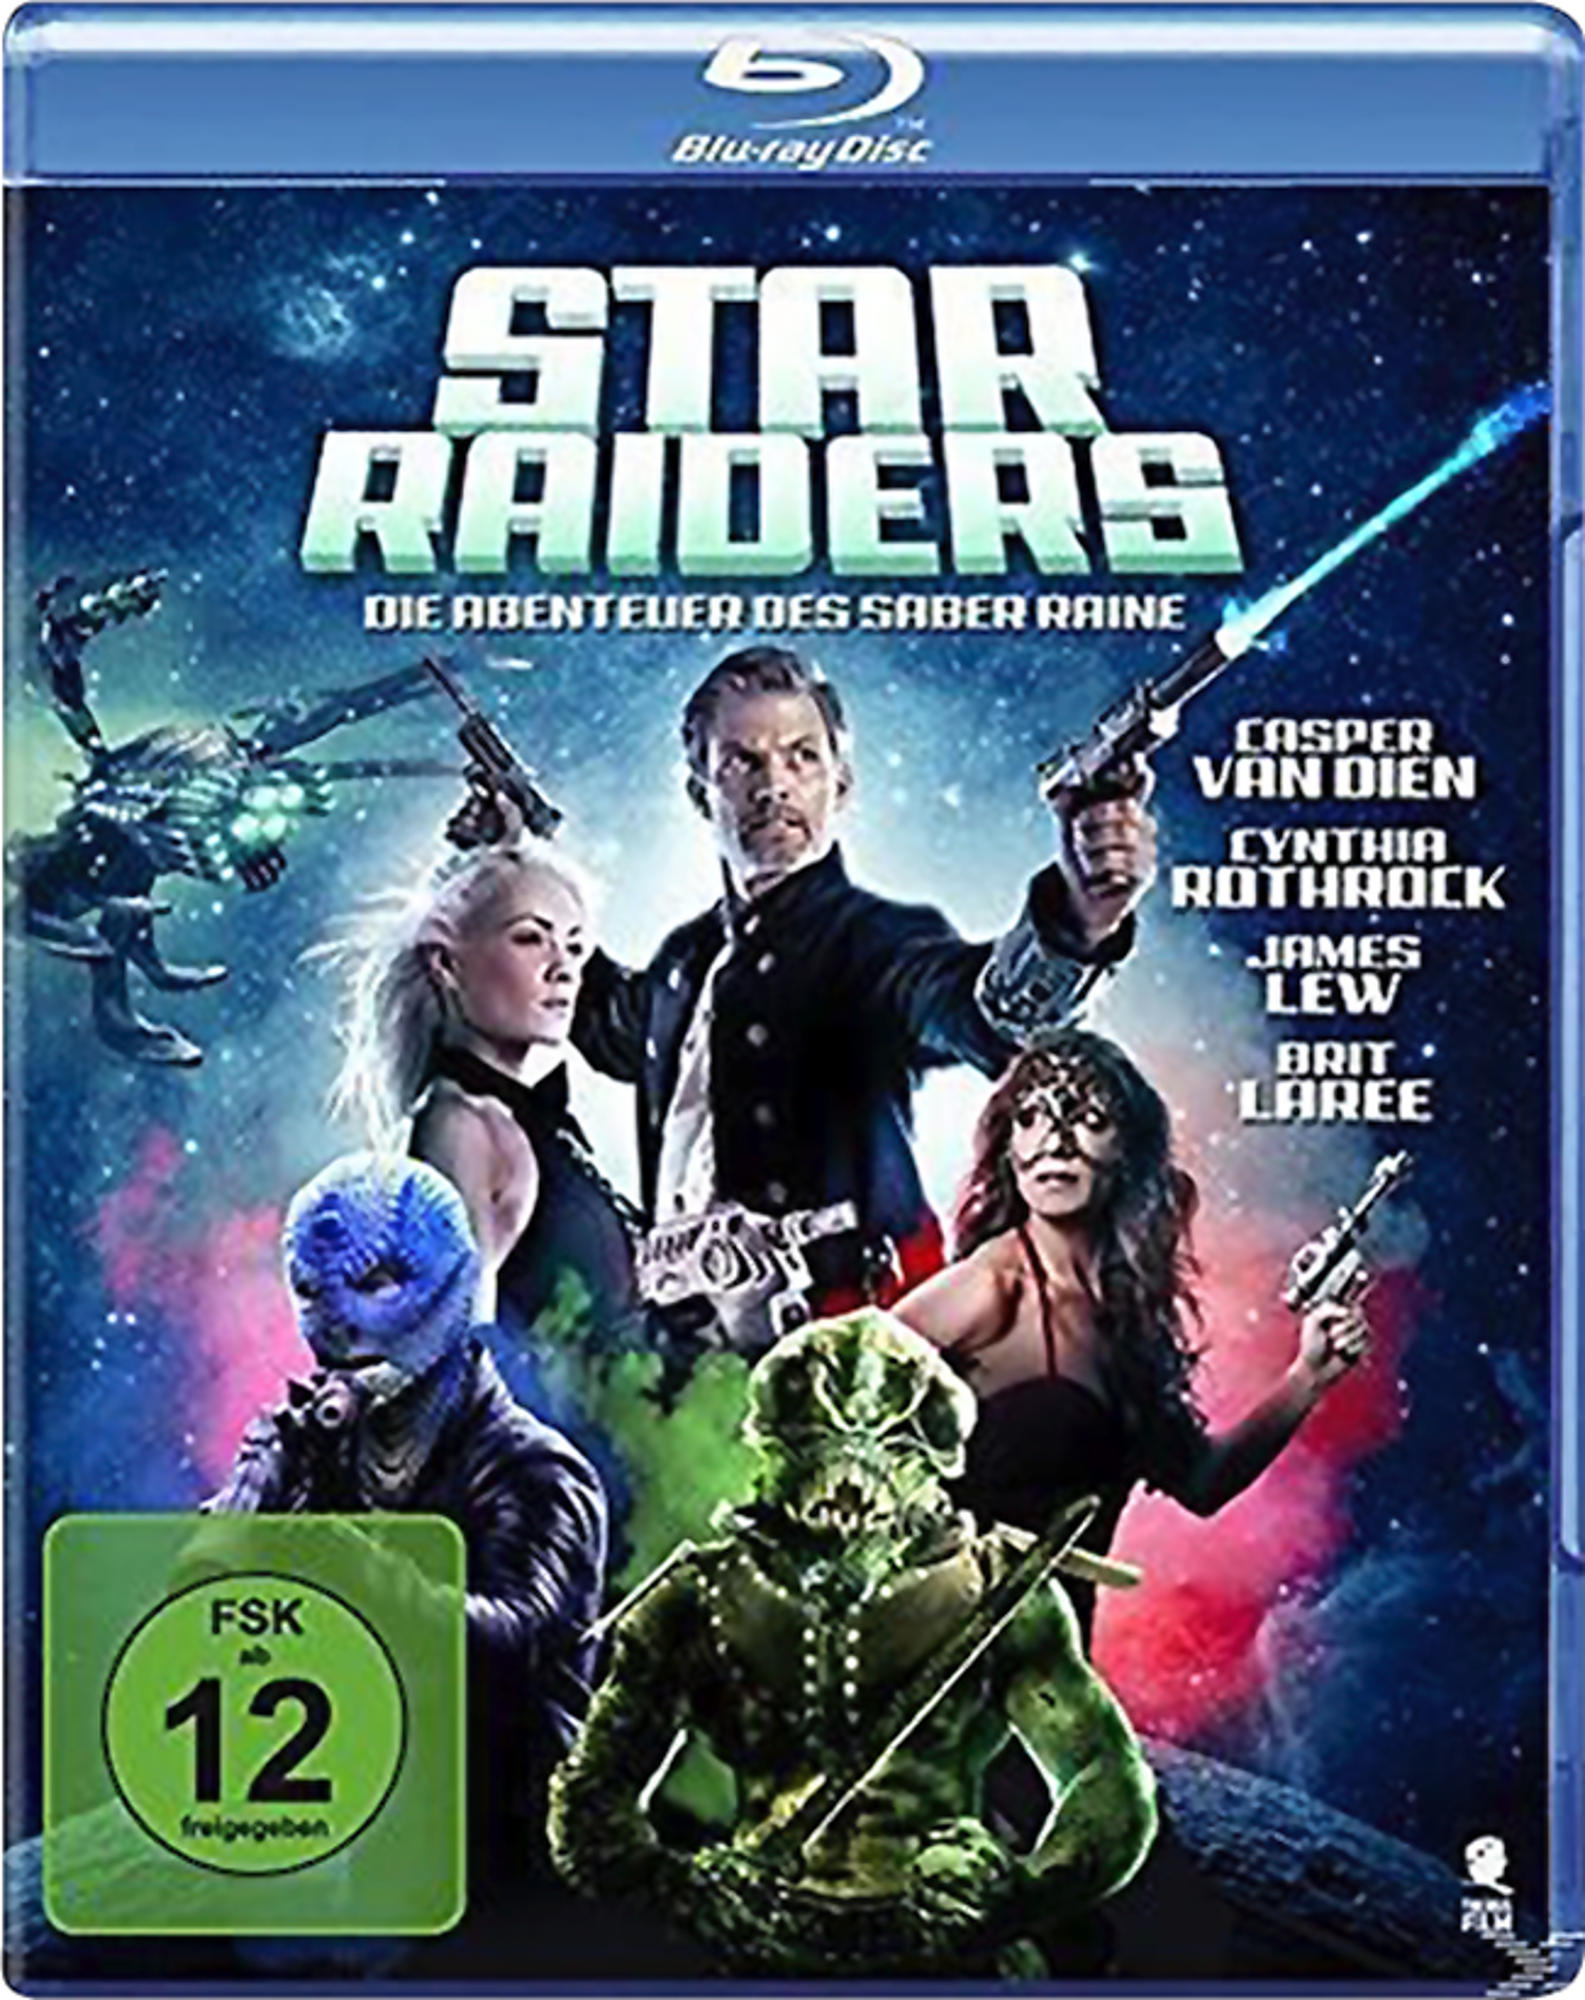 - Saber Blu-ray Raiders Die Raine Star des Abenteuer